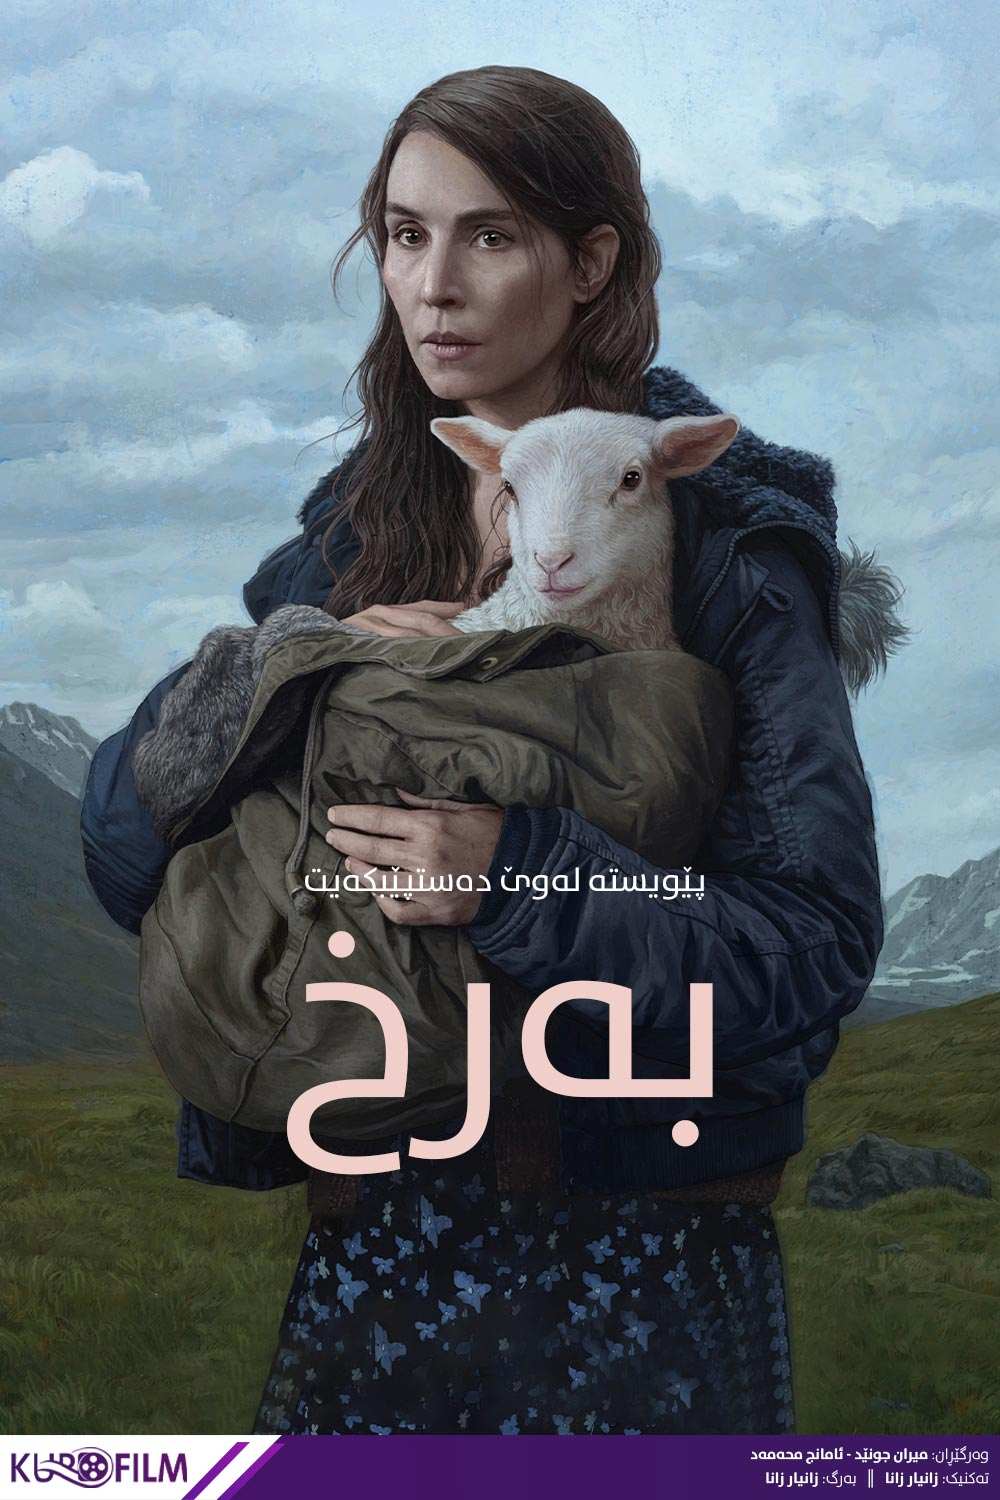 Lamb (2021)